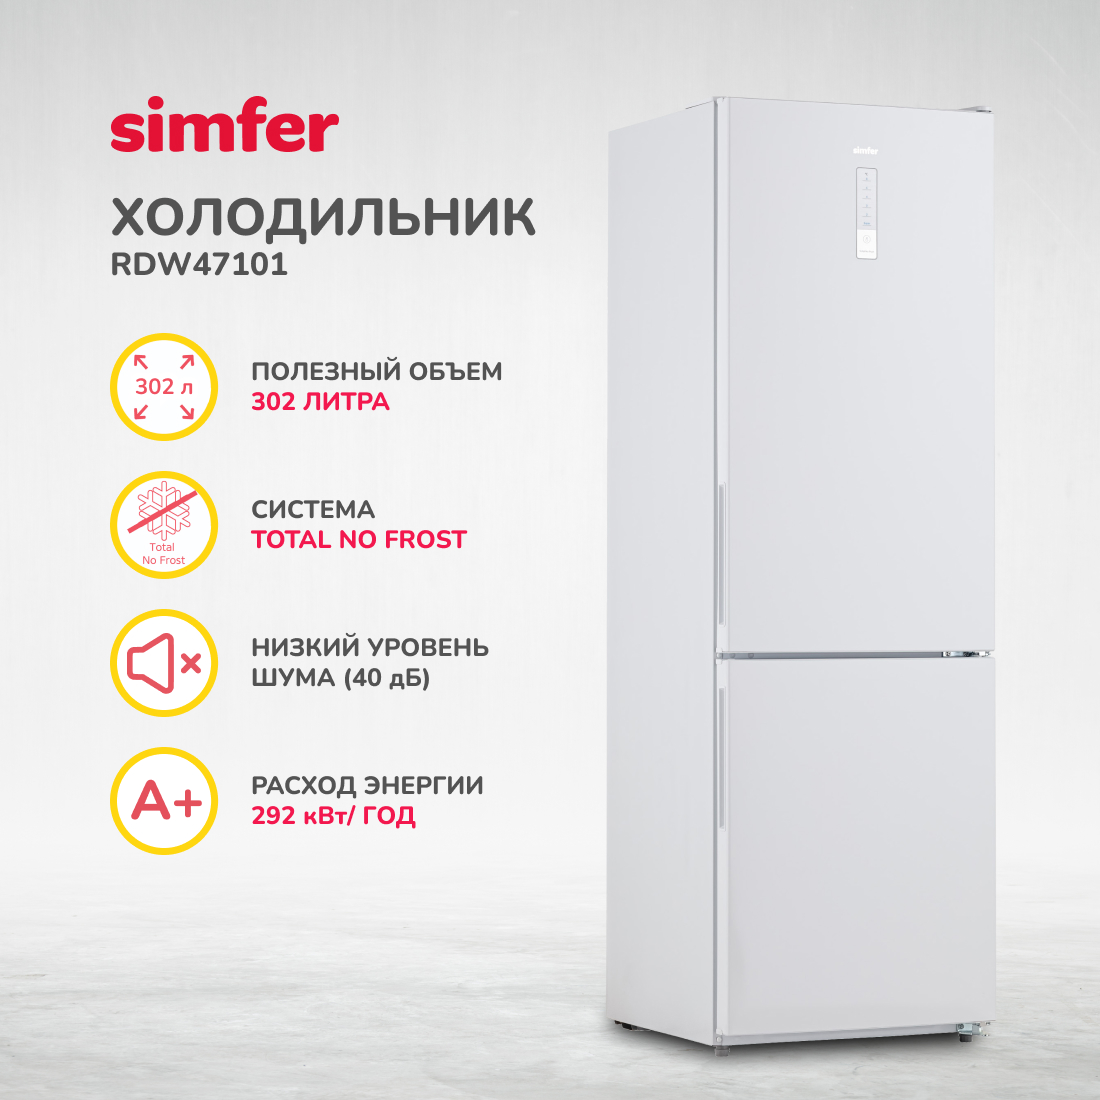 Холодильник Simfer RDW47101, No Frost, двухкамерный, 302 л, цвет белый